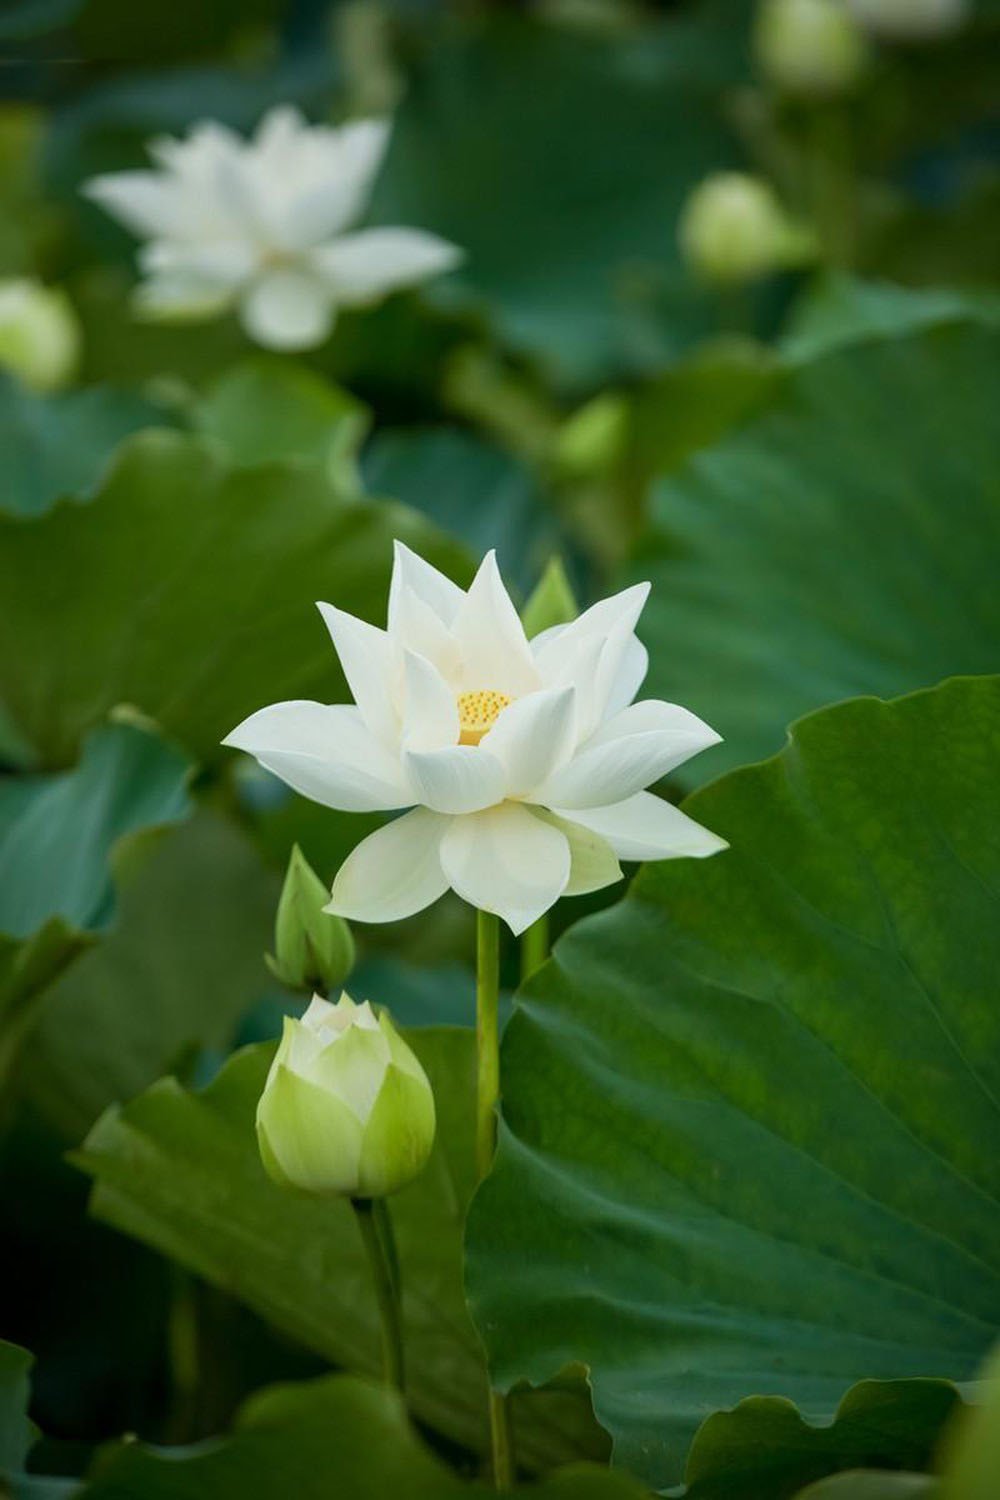 Tải bộ hình nền hoa sen tuyệt đẹp cho điện thoại iPhone  White flowers  Beautiful flowers Water lilies